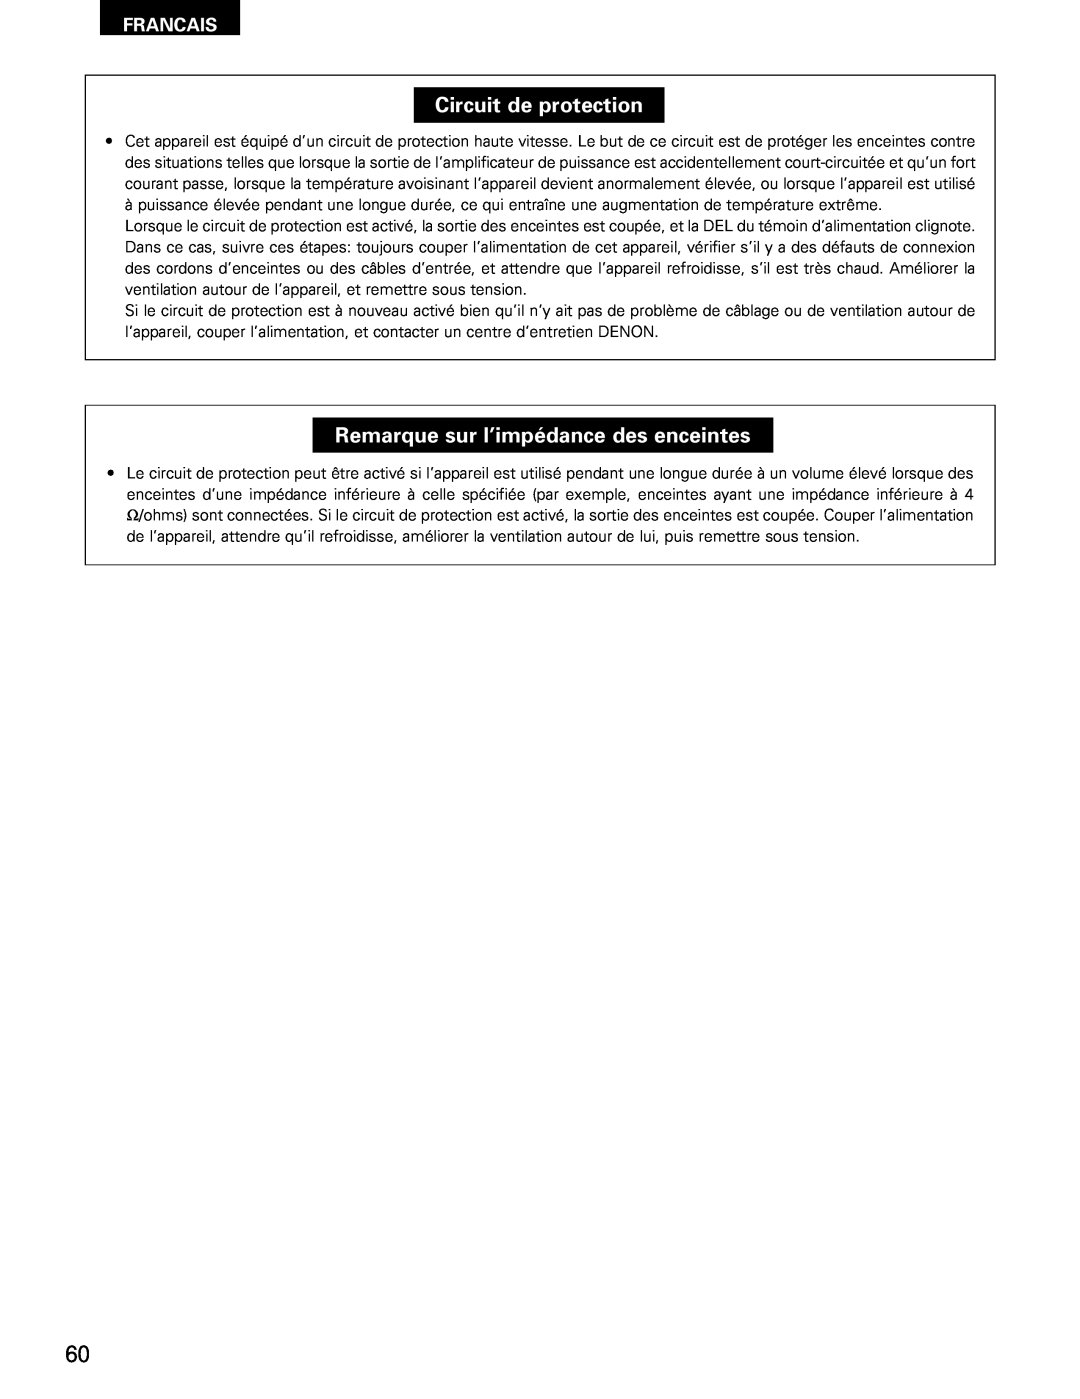 Denon AVR-1802/882 manual Circuit de protection, Remarque sur l’impédance des enceintes, Francais 